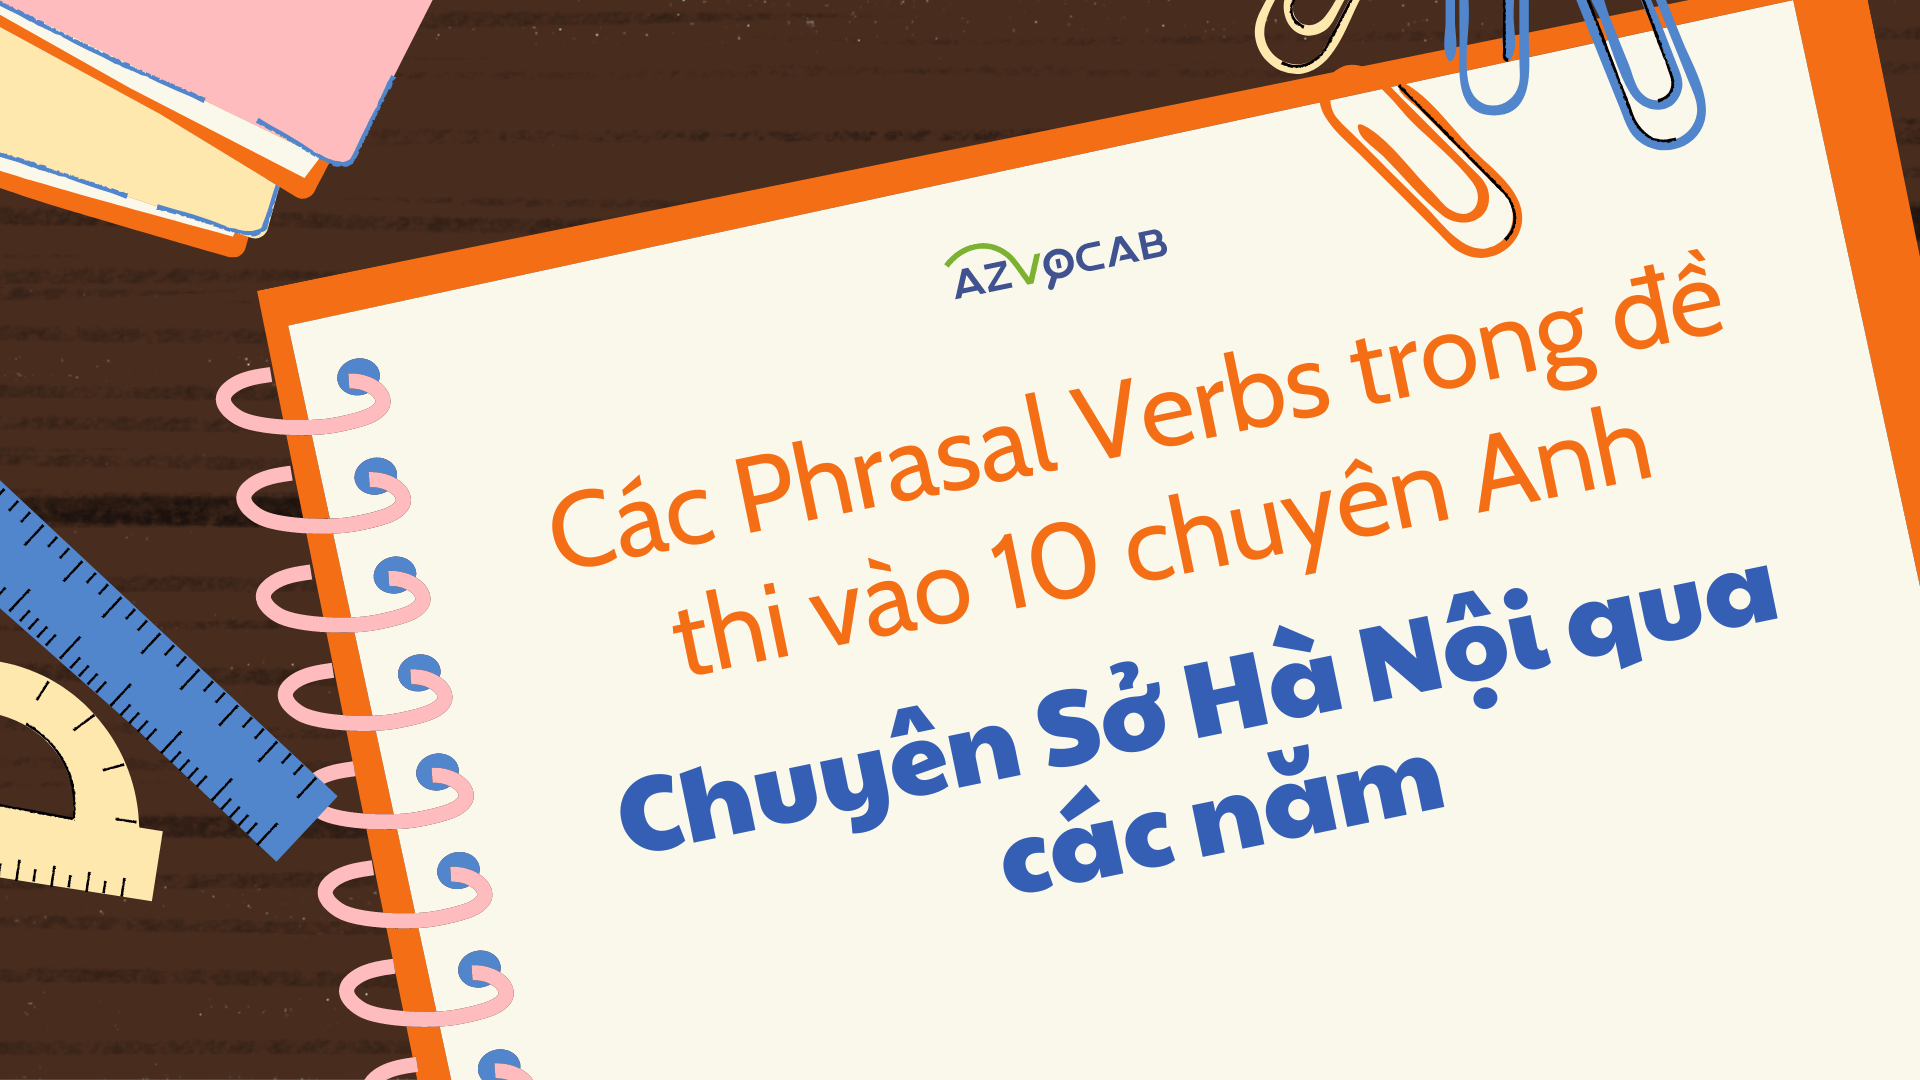 Phrasal verbs trong đề vào 10 chuyên Anh Sở Hà Nội